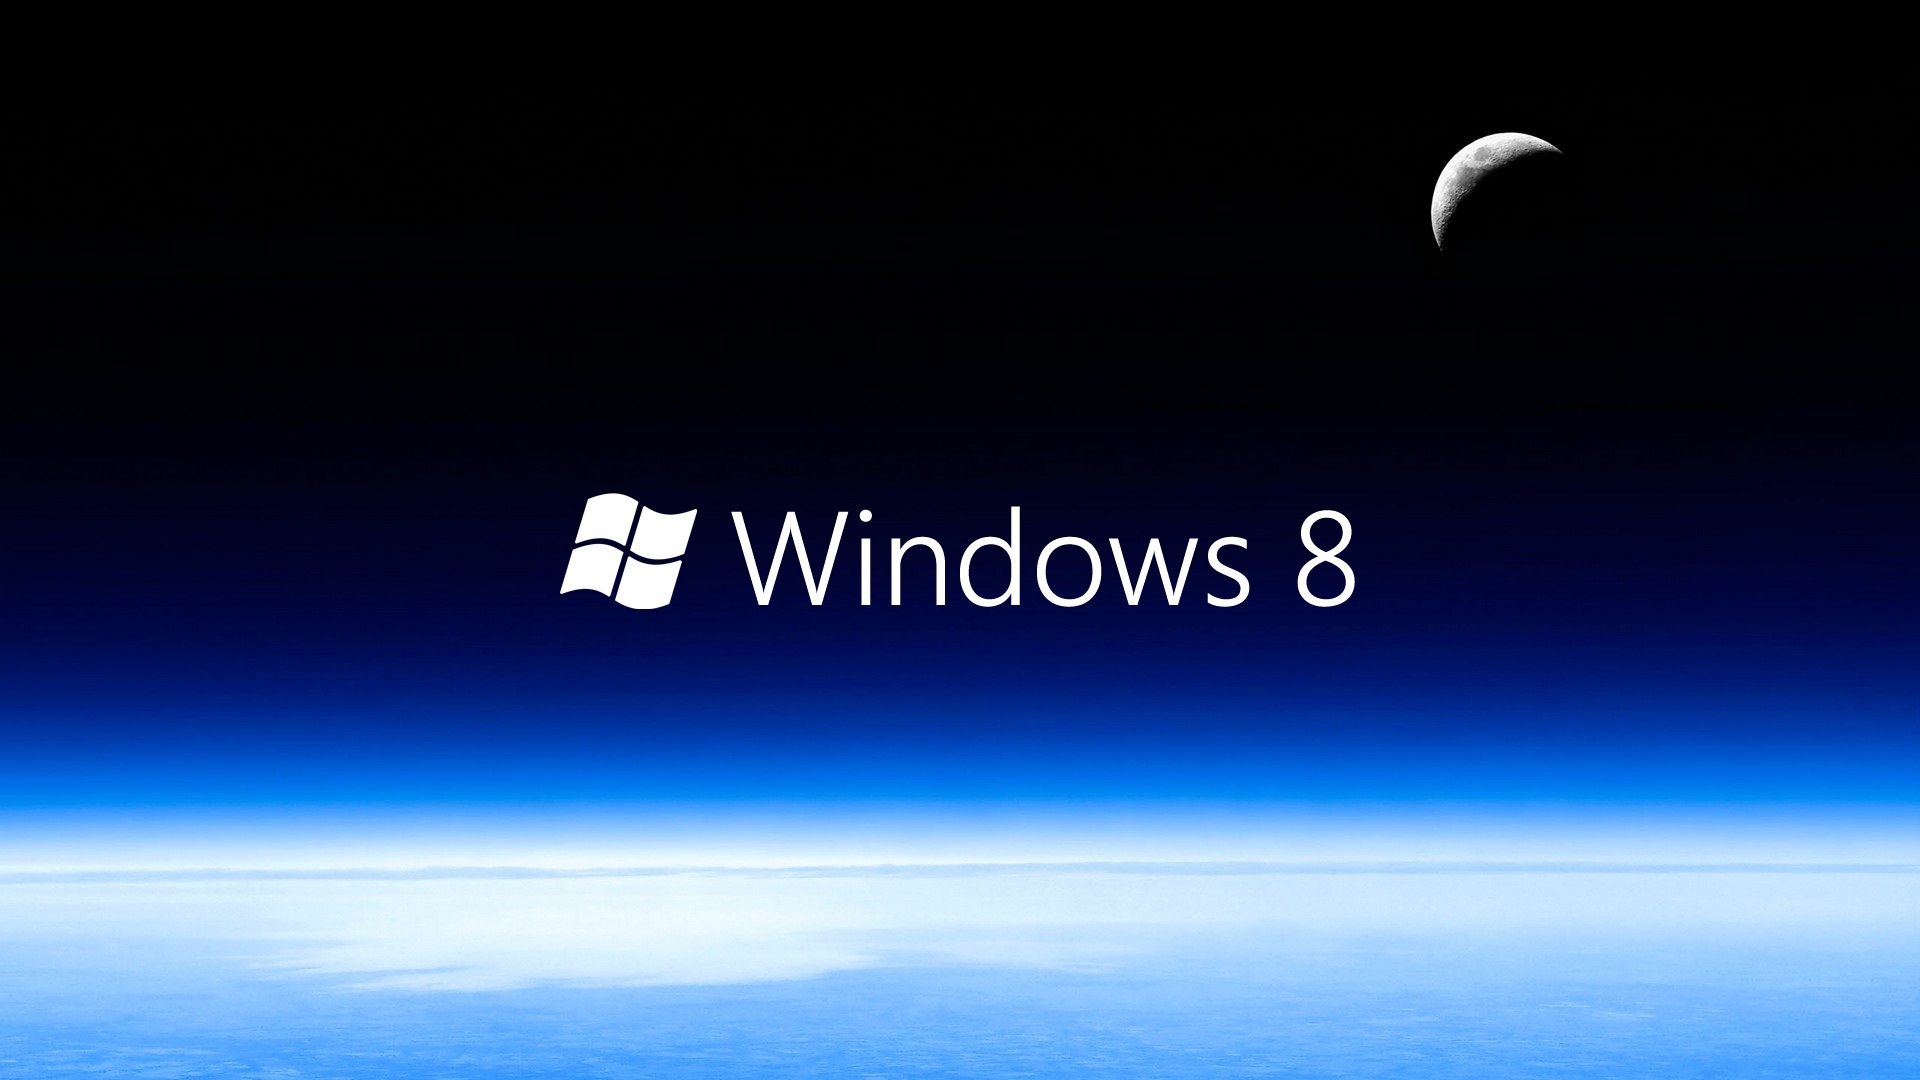 Best Windows 8 Widescreen 2013 HD Wallpaper of Windows